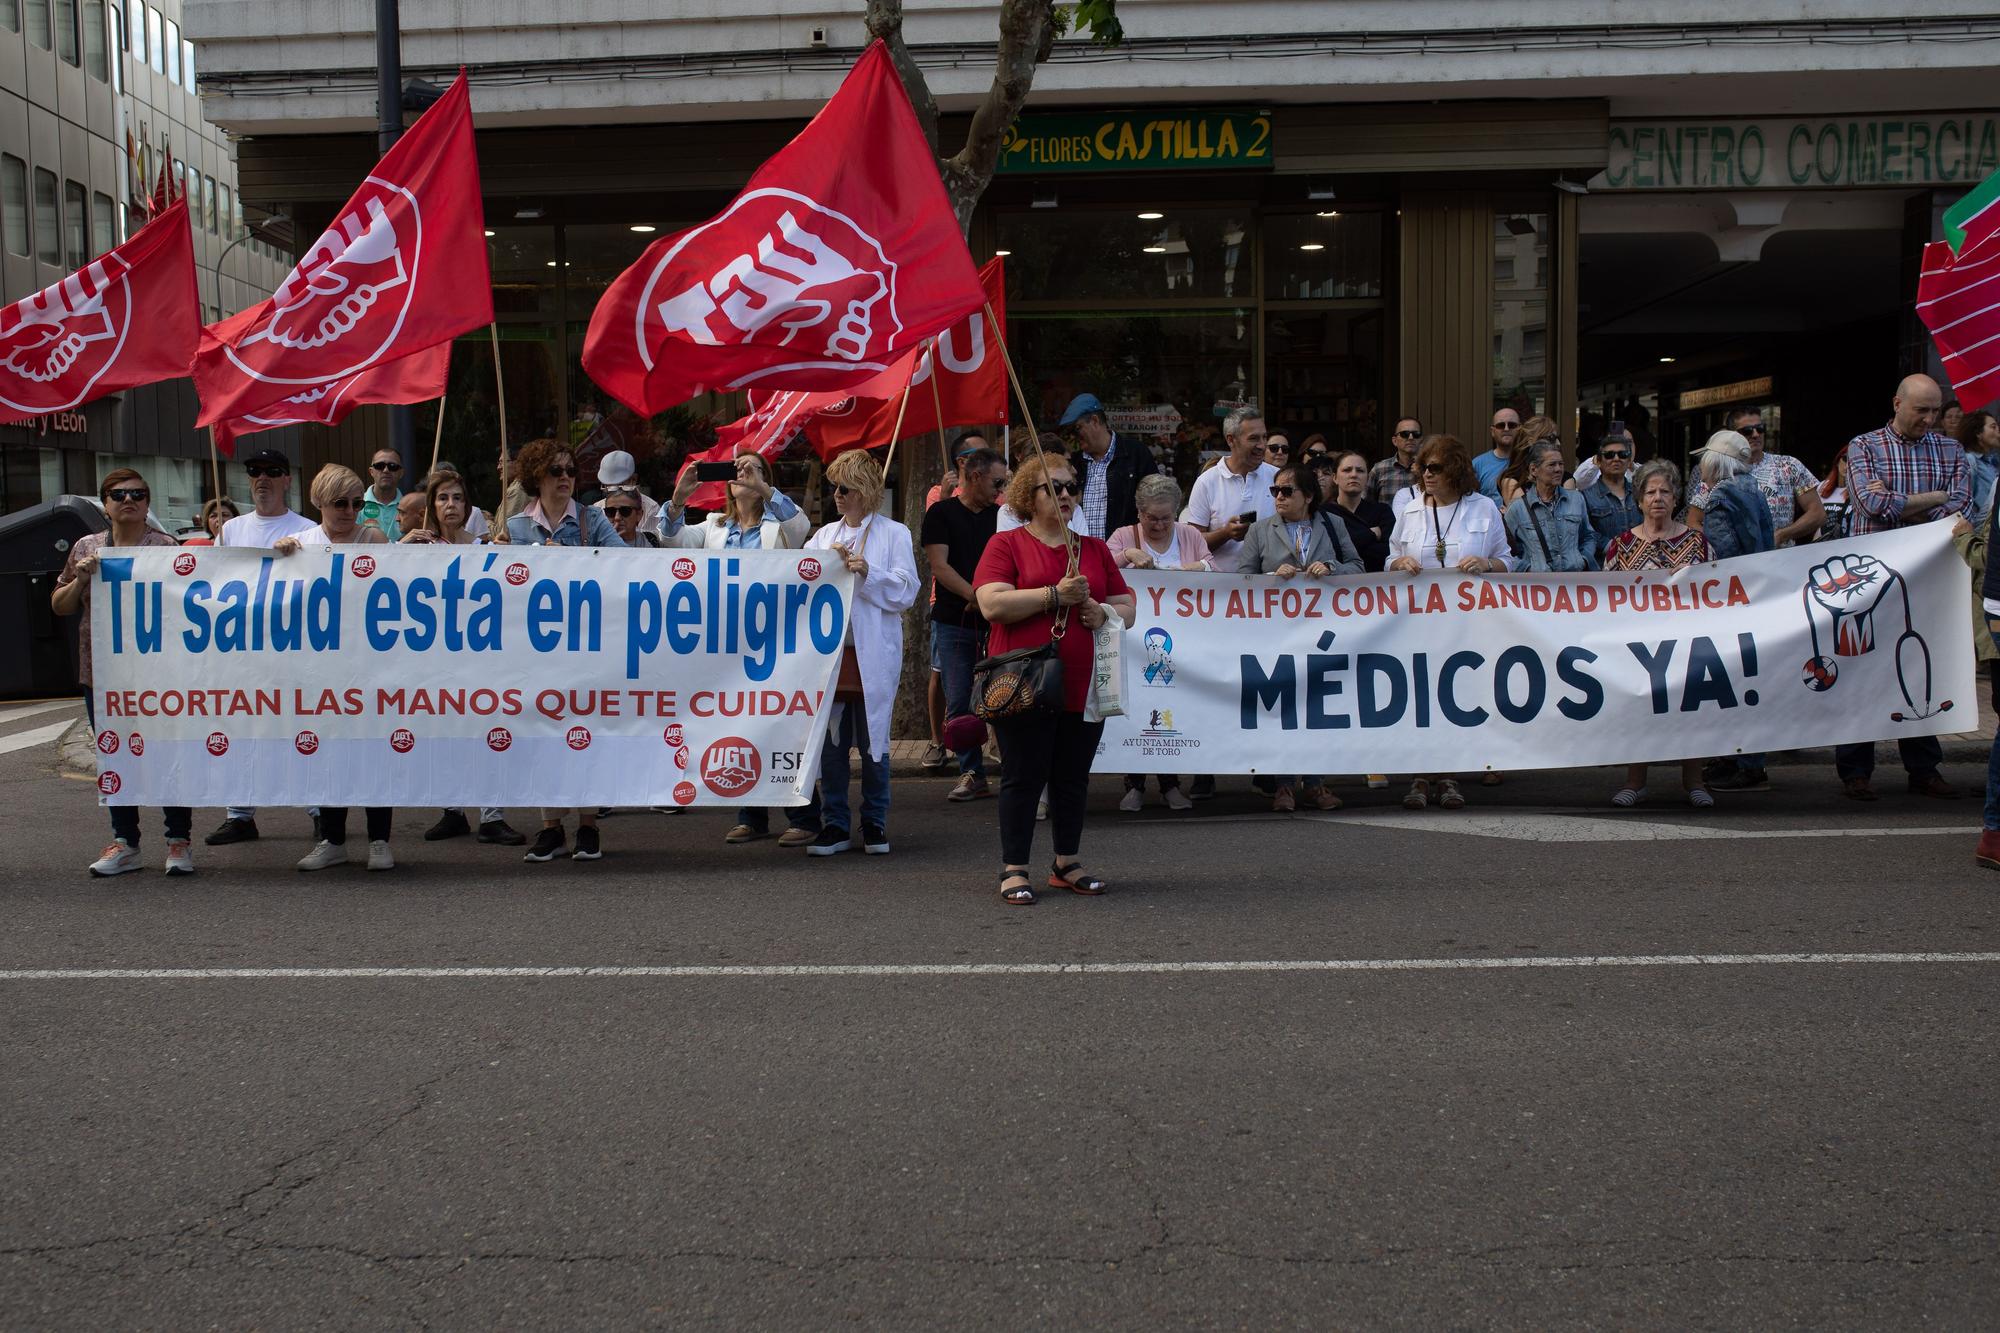 GALERÍA | Las imágenes de la manifestación por la sanidad en Zamora este sábado